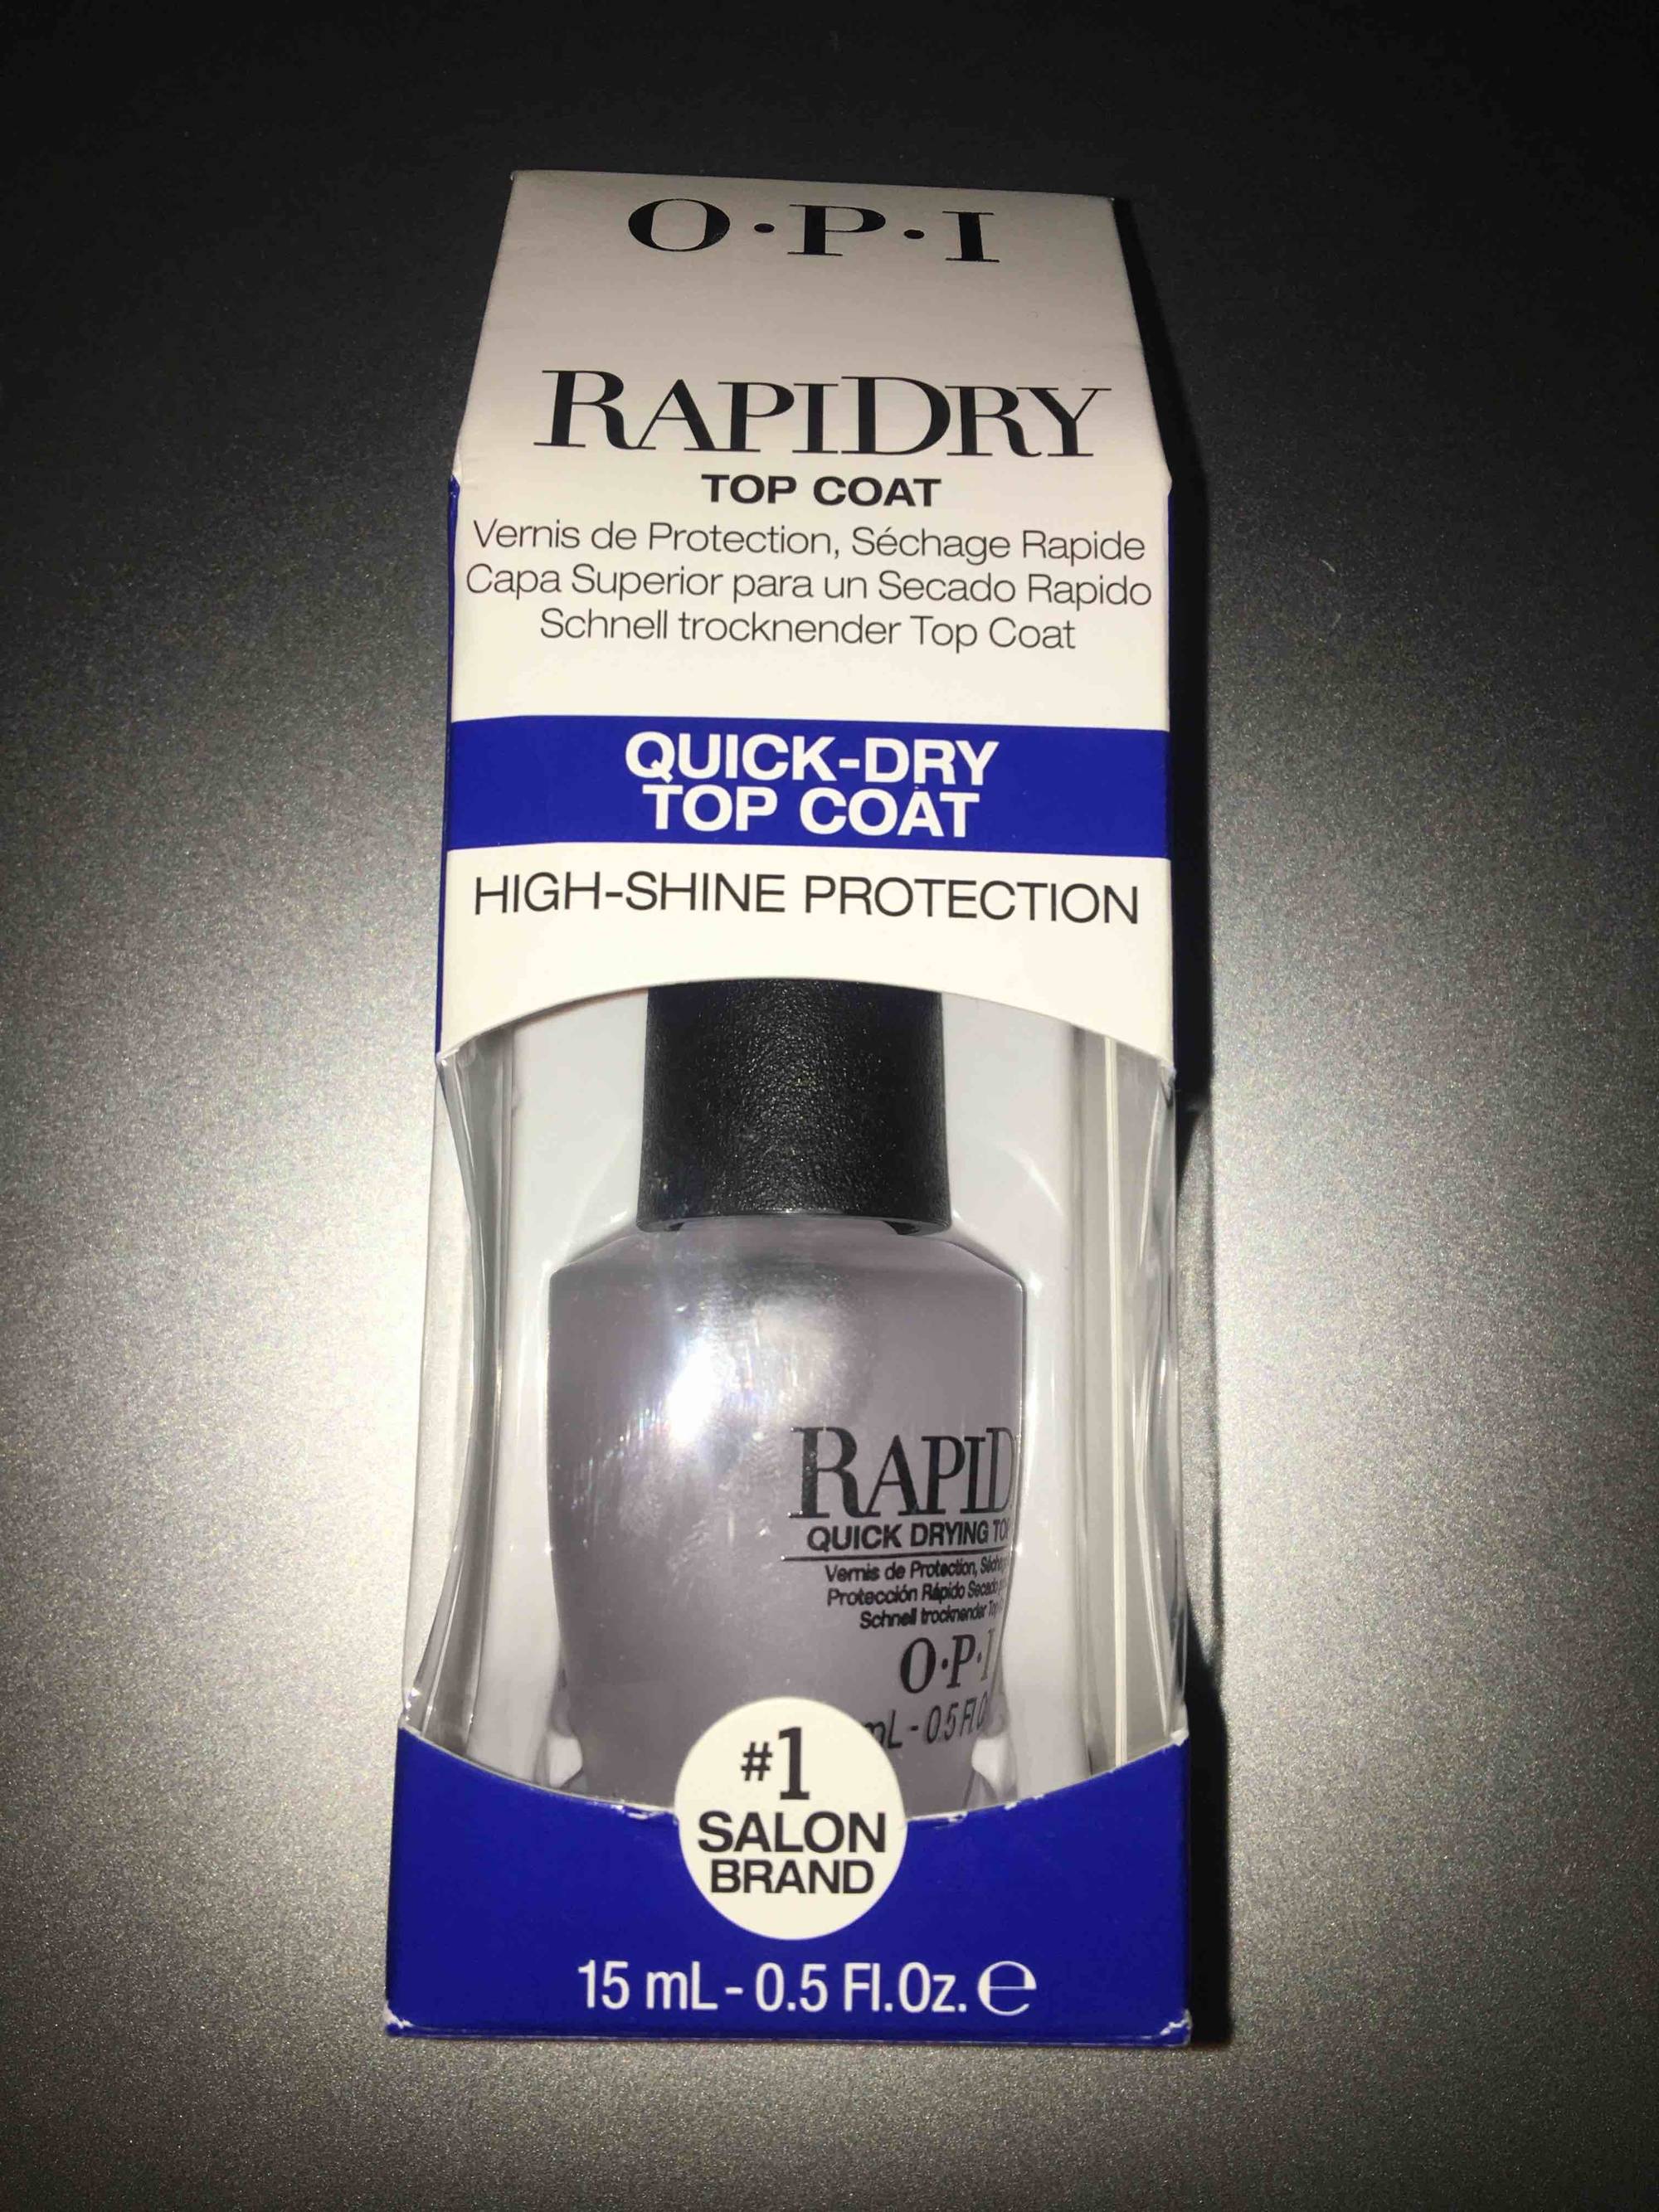 O.P.I - RapiDry top coat - Vernis de protection #1 salon brand